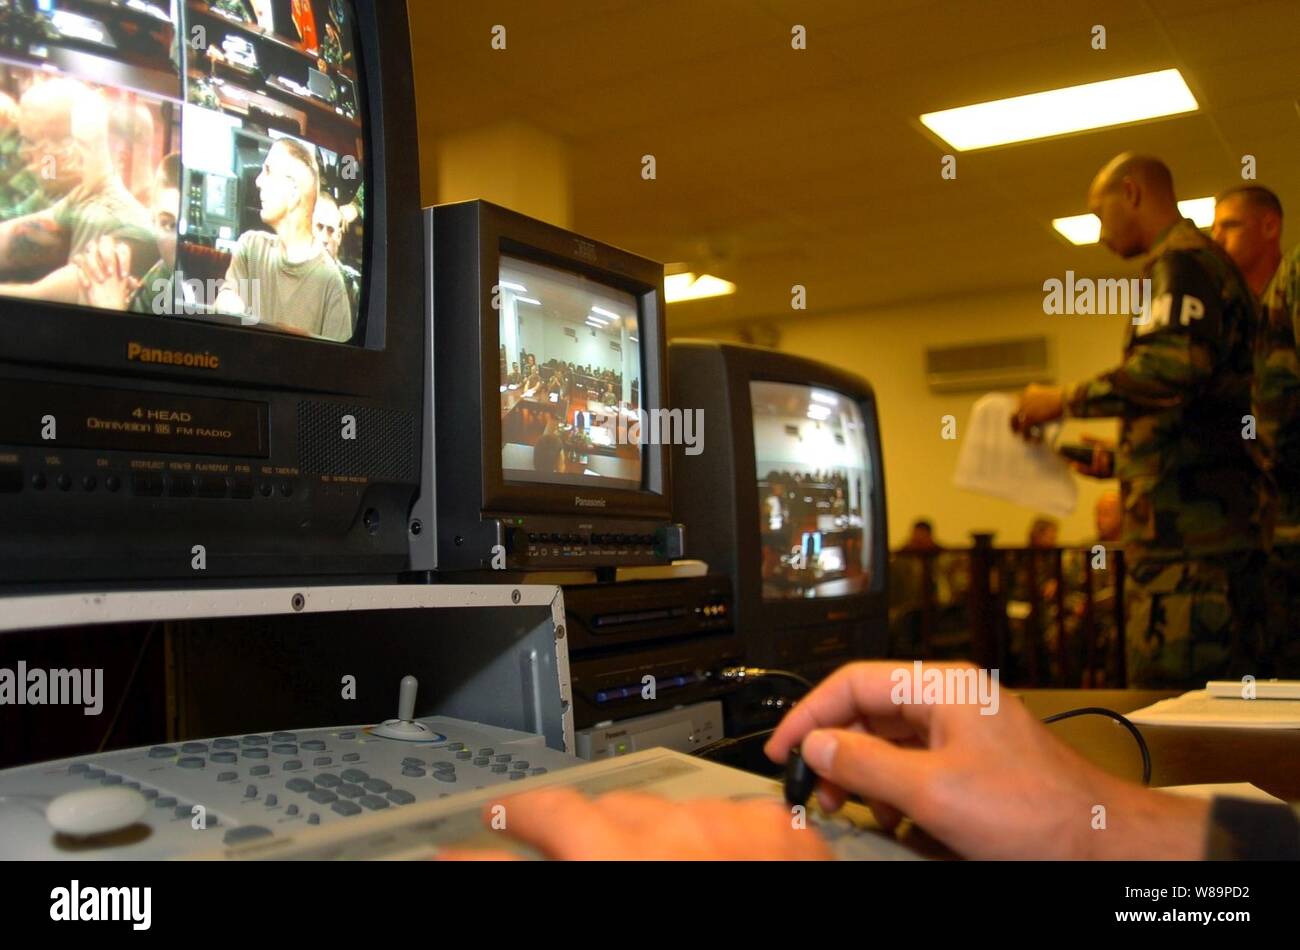 Eine closed-circuit TV-System wird während der Kommissionen in der Joint Task Force Guantanamo Gerichtssaal in Guantanamo Bay, Kuba, am Okt. 29, 2004 Probe getestet. Während die Kommissionen, ein Live-video des Verfahrens sind, ein Auditorium im nahe gelegenen Bulkeley Halle für die Mitglieder der Medien geschickt zu beobachten und zu berichten. Die erste US-Militärtribunale in mehr als 50 Jahren fand in diesem Gerichtssaal von August 24. bis 27. August 2004. Militärtribunale in der Vergangenheit verwendet wurden, um zu versuchen, Verstöße gegen das Gesetz des Krieges. Panels bestehen aus drei bis sieben militärische Stockfoto